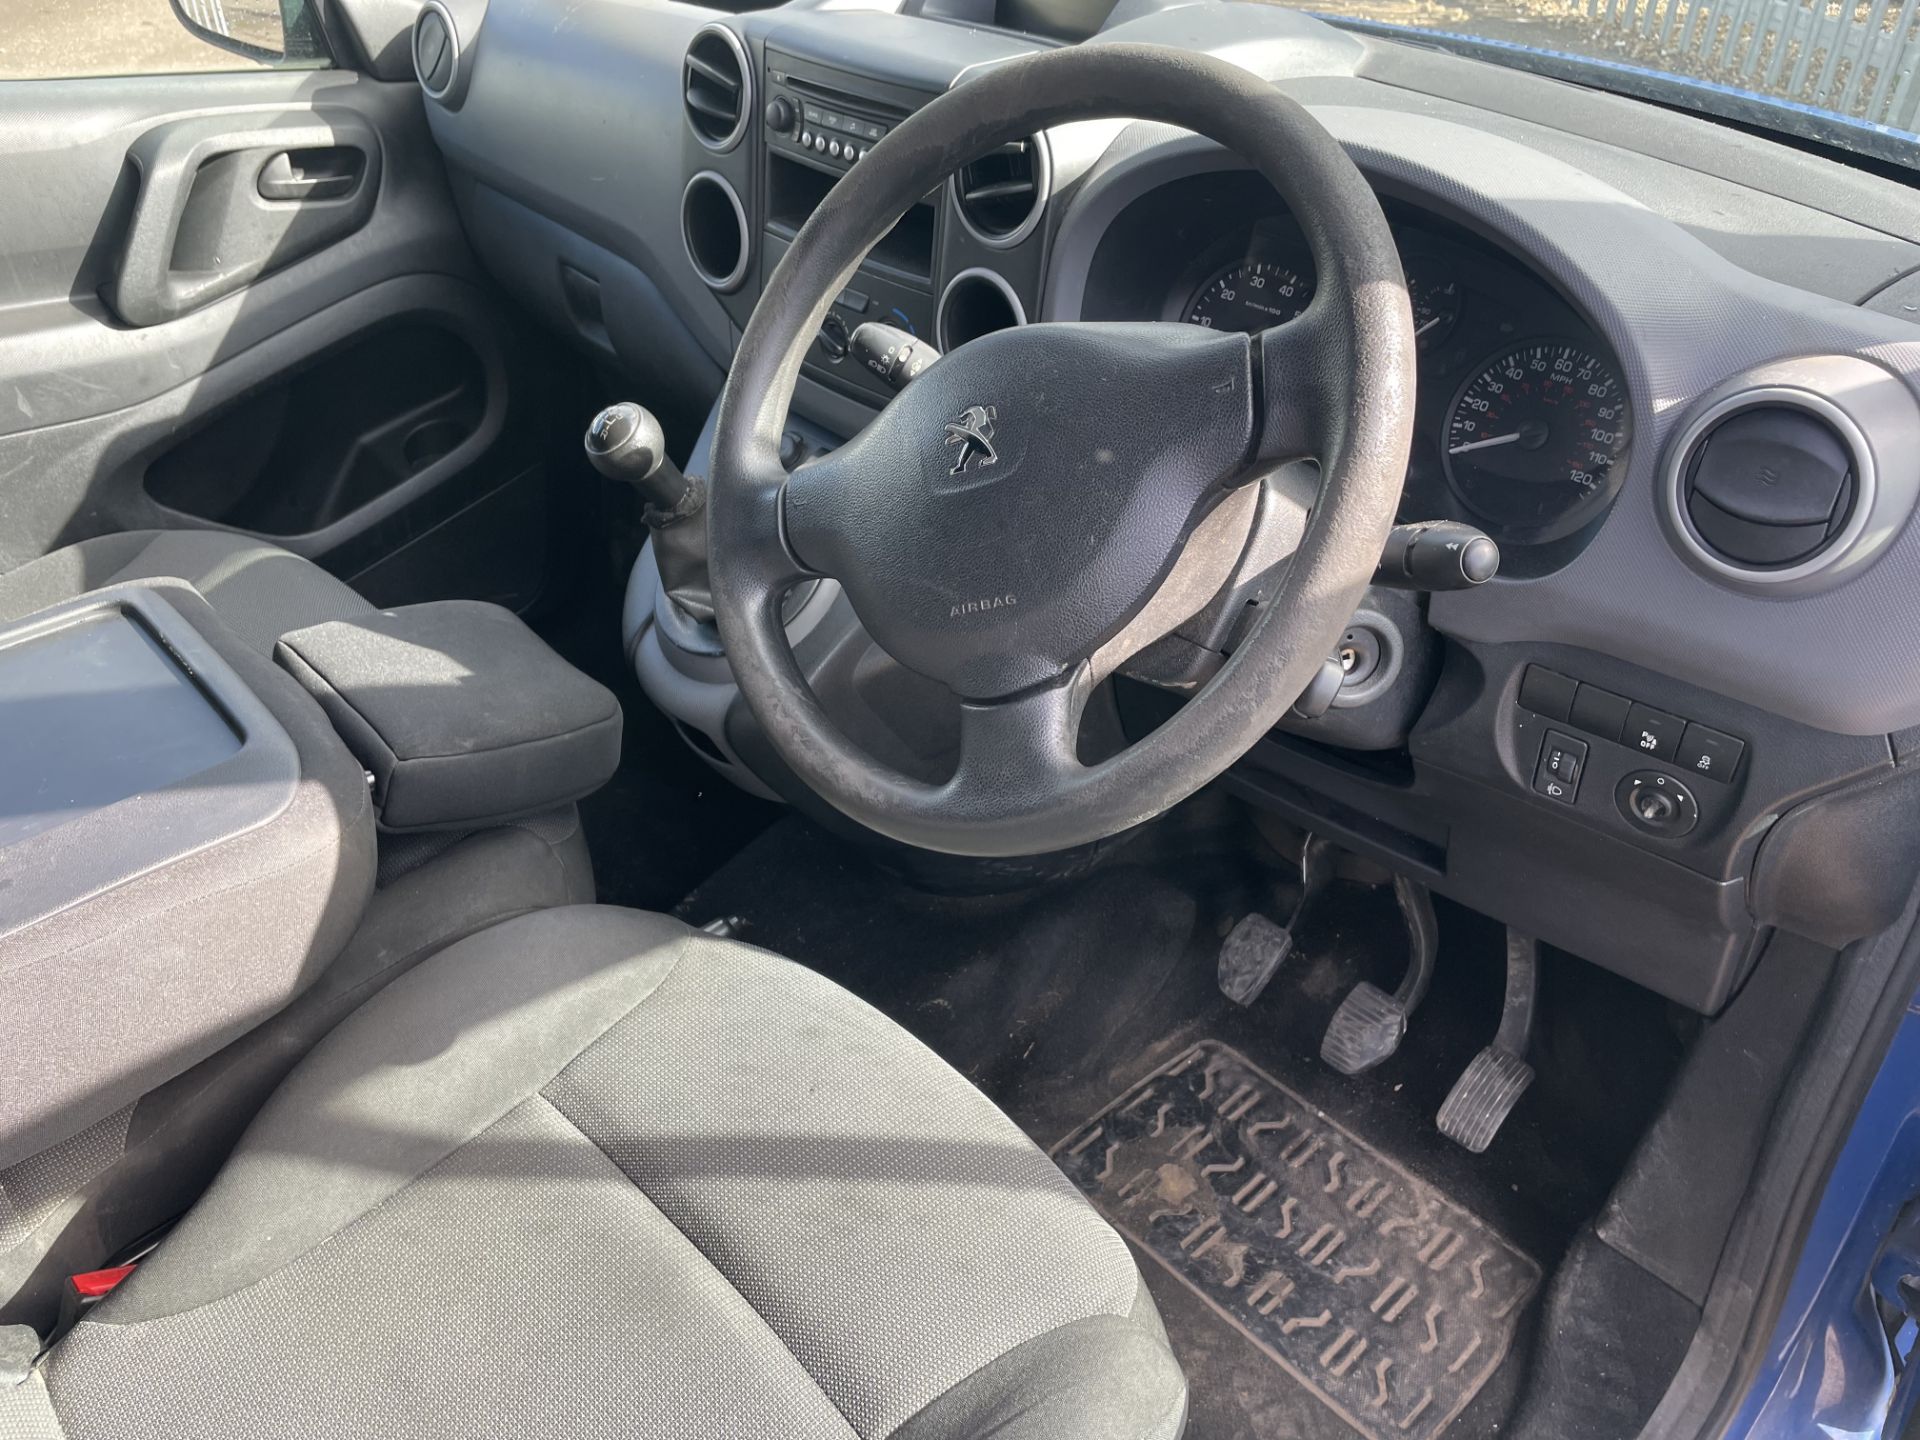 ** ON SALE ** Peugeot Partner S 1.5 BlueHDI 75 L1H1 2018 '18 Reg' - ULEZ Compliant - CD Player - Bild 14 aus 21